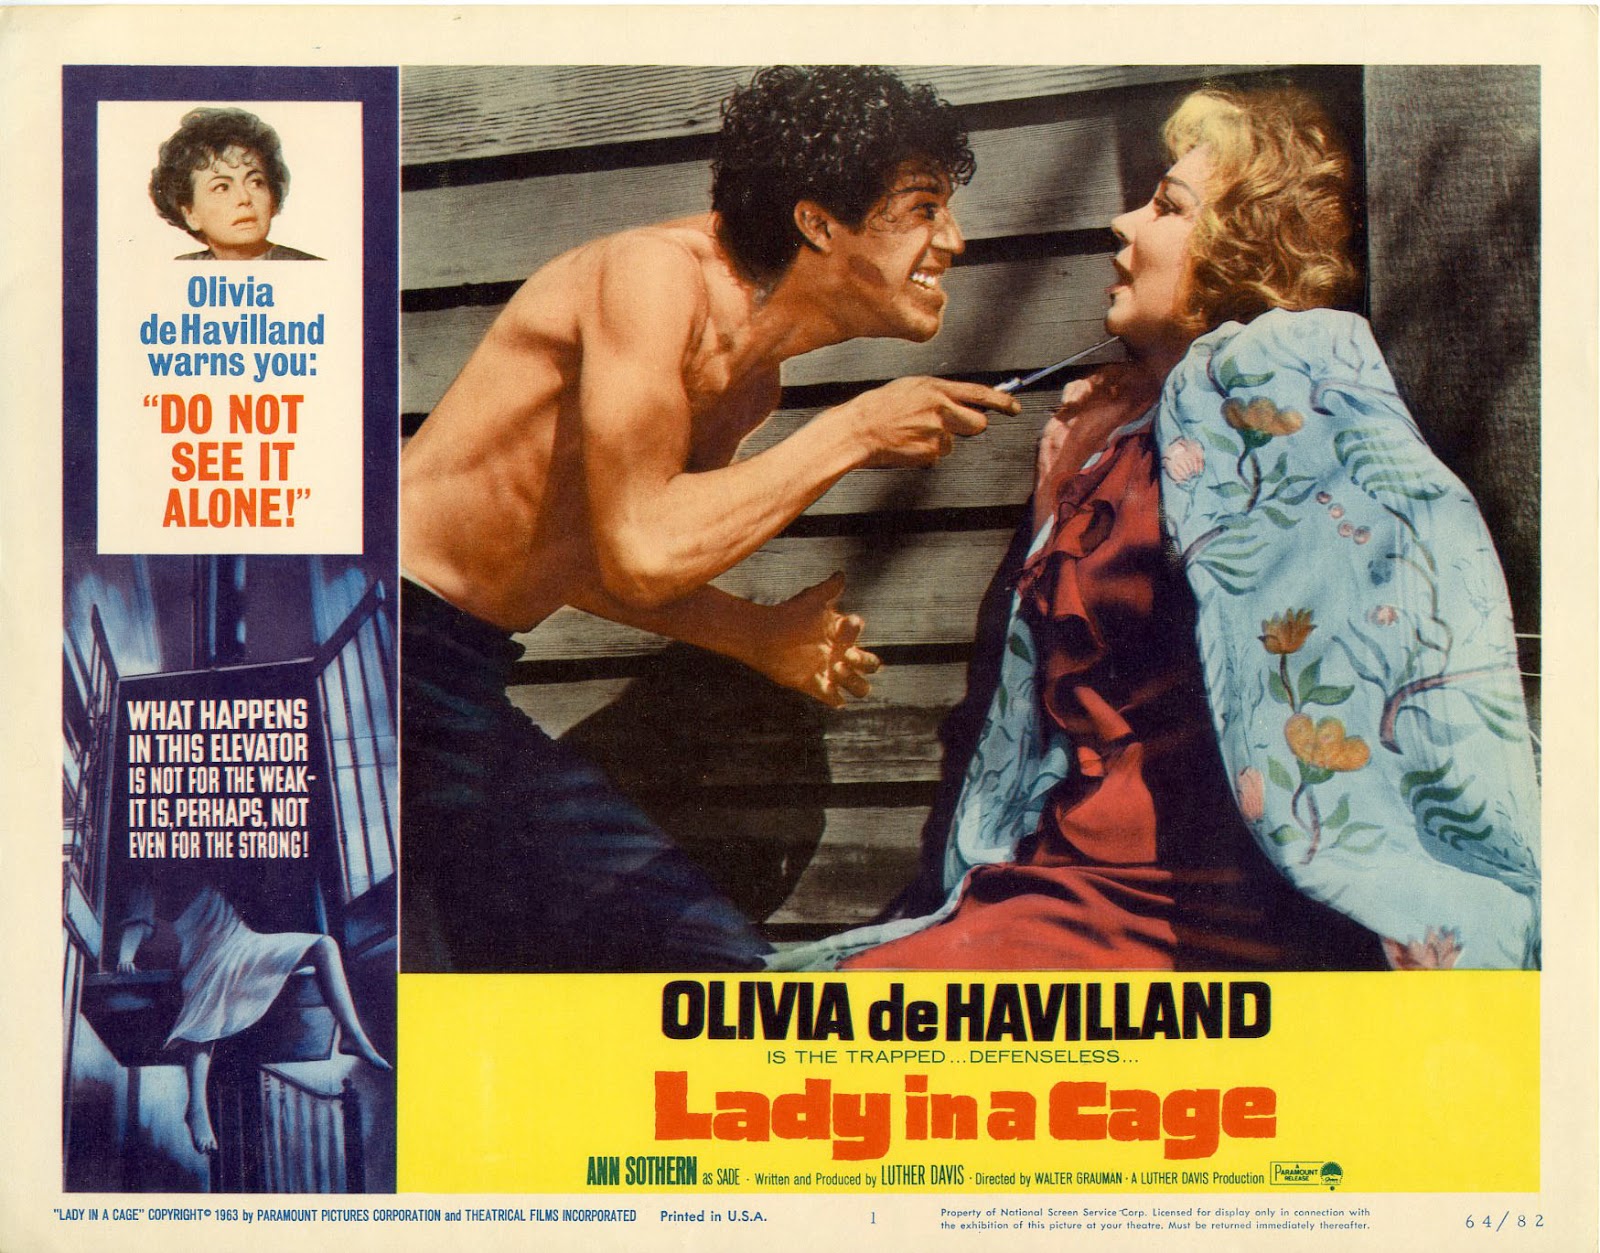 Amazoncom: Lady in a Cage: Havilland, Caan, Billingsley